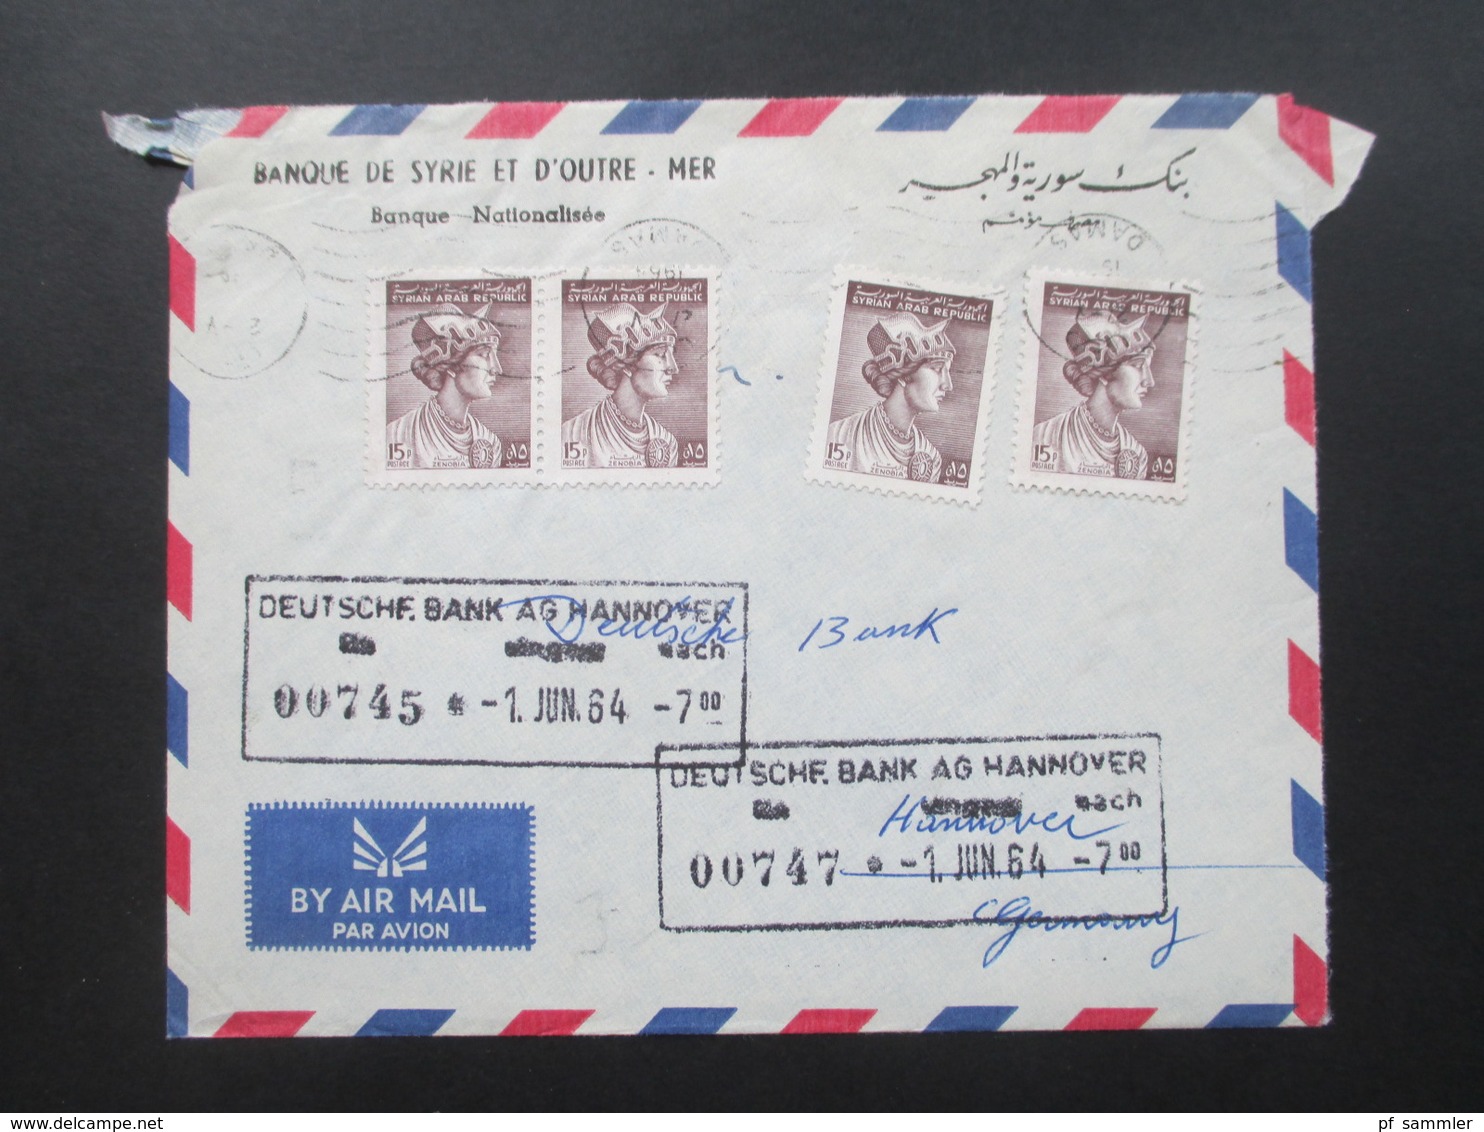 Syrien 1964 Air Mail / Luftpost Banque De Syrie Et D'Outre - Mer. Damas - Hannover Deutsche Bank - Syria